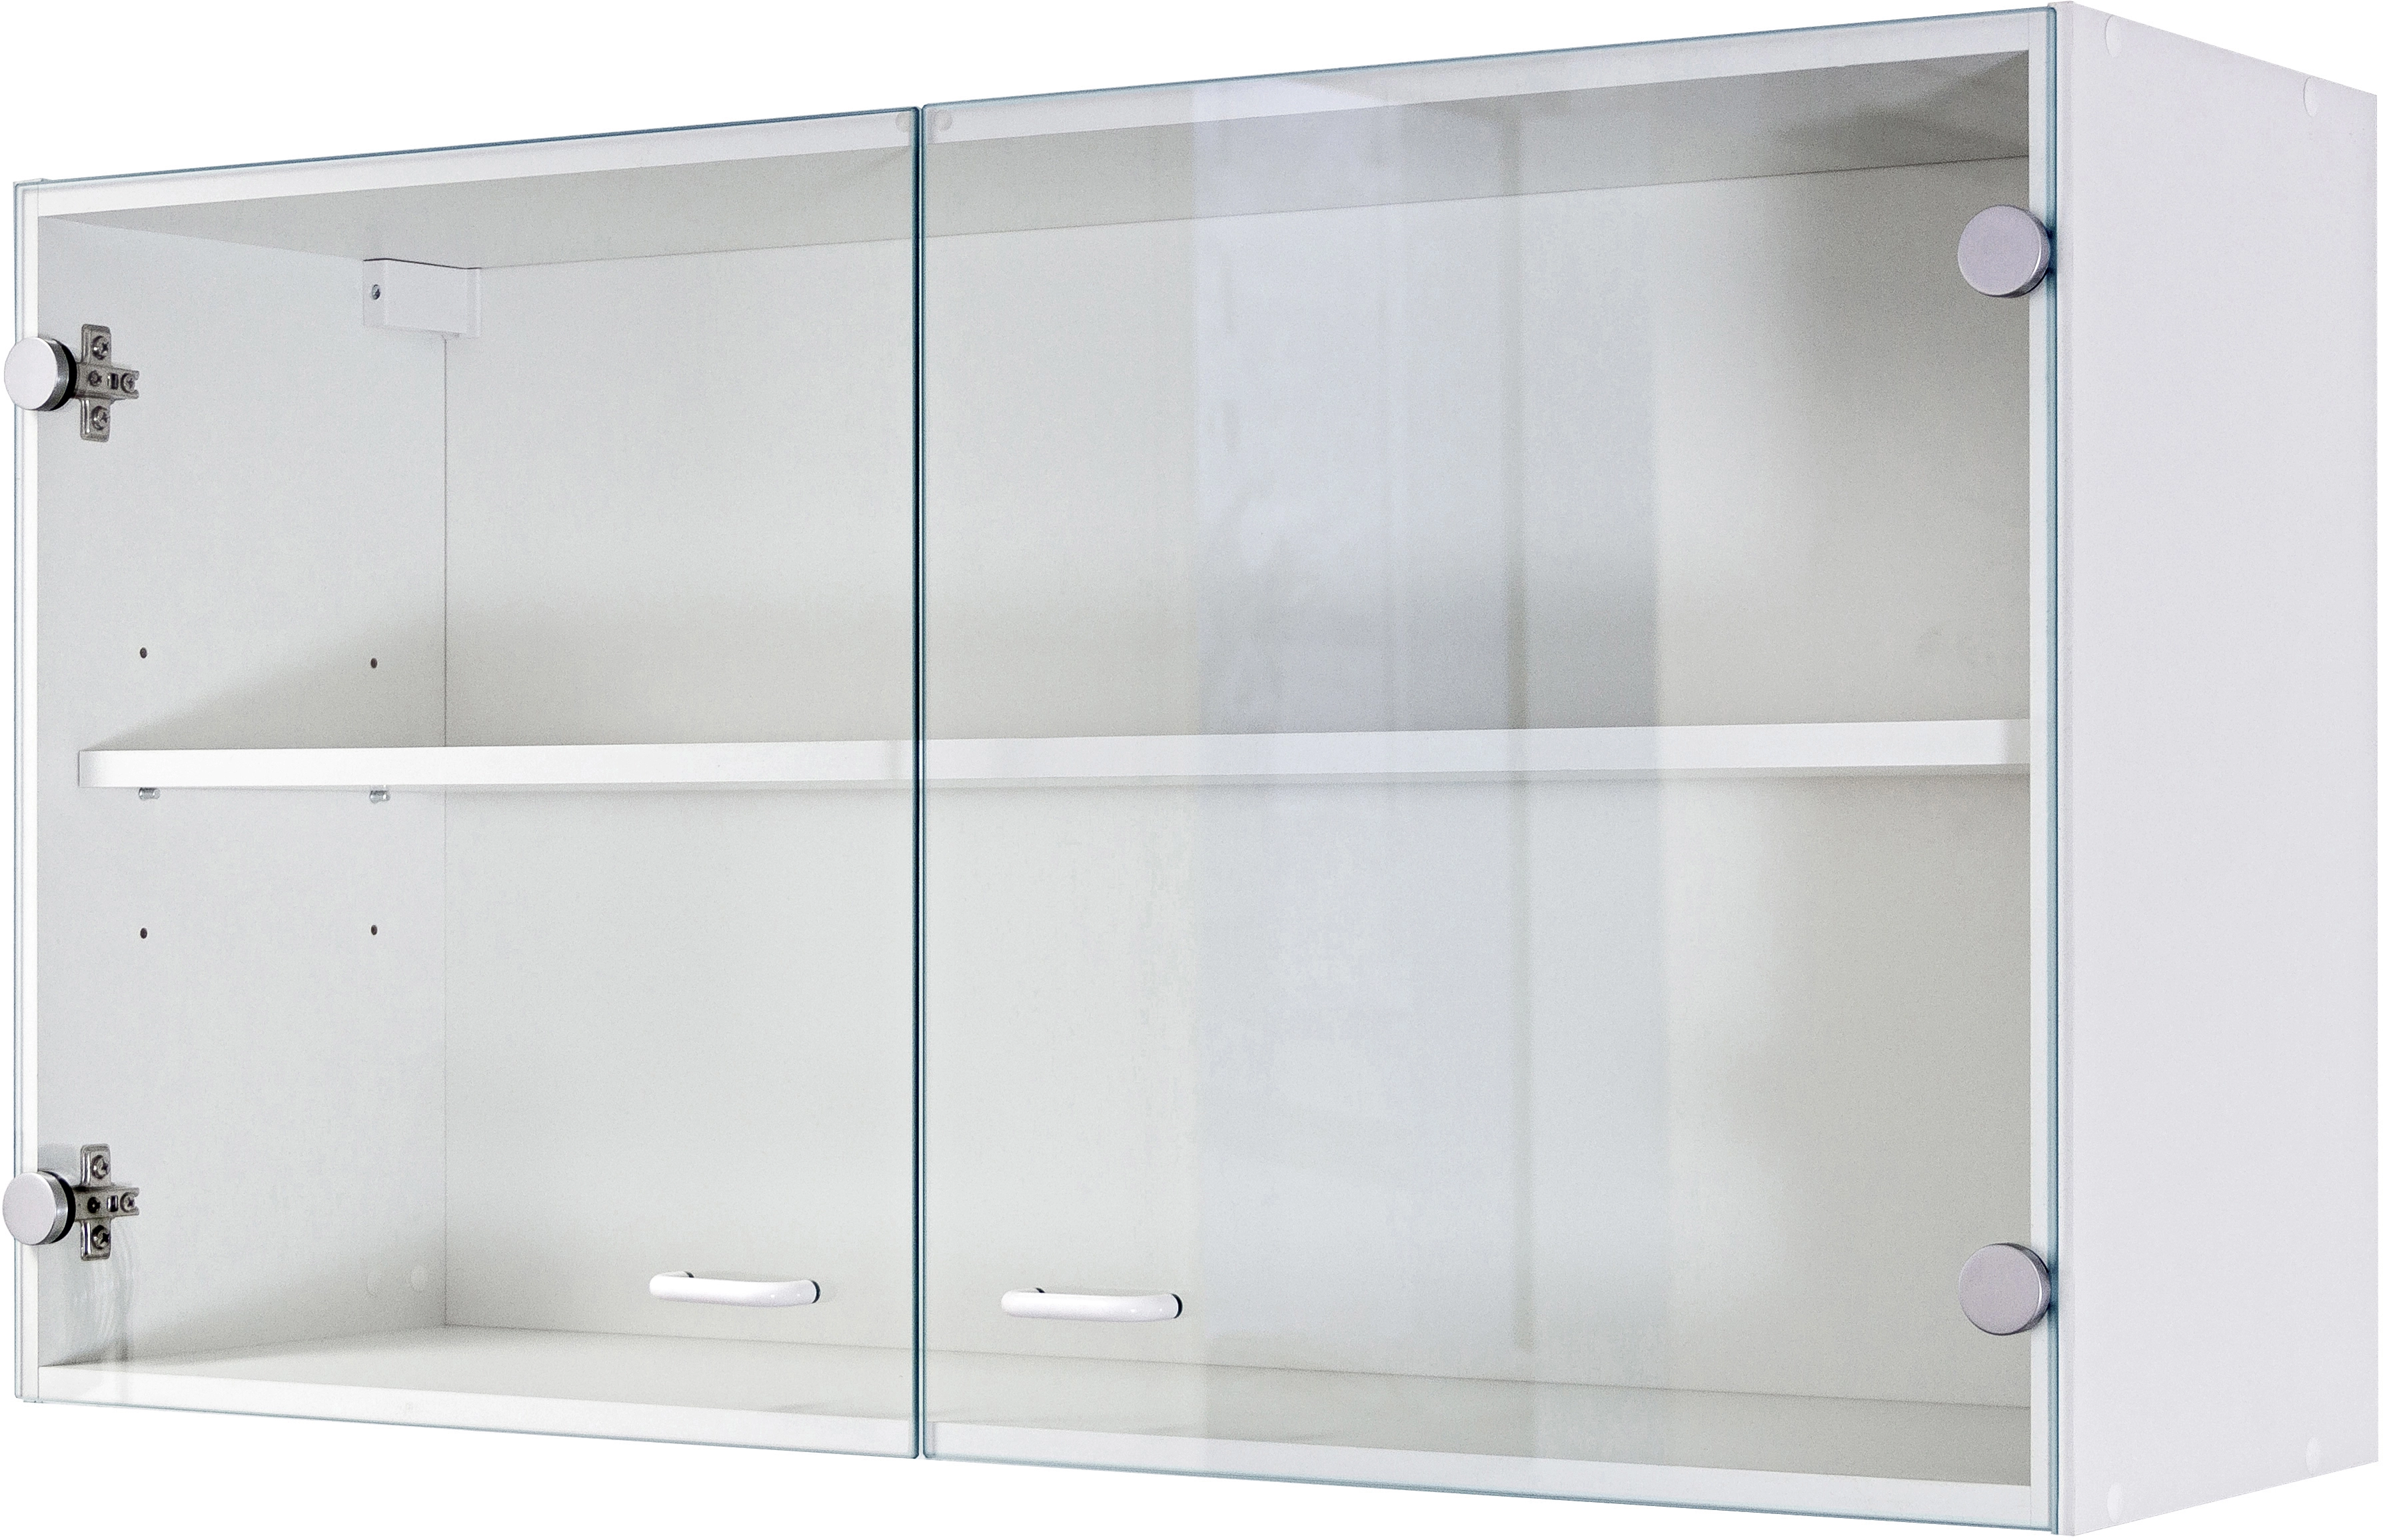 Flex-Well Classic Oberschrank mit Glastür Speed 100 cm Weiß kaufen bei OBI